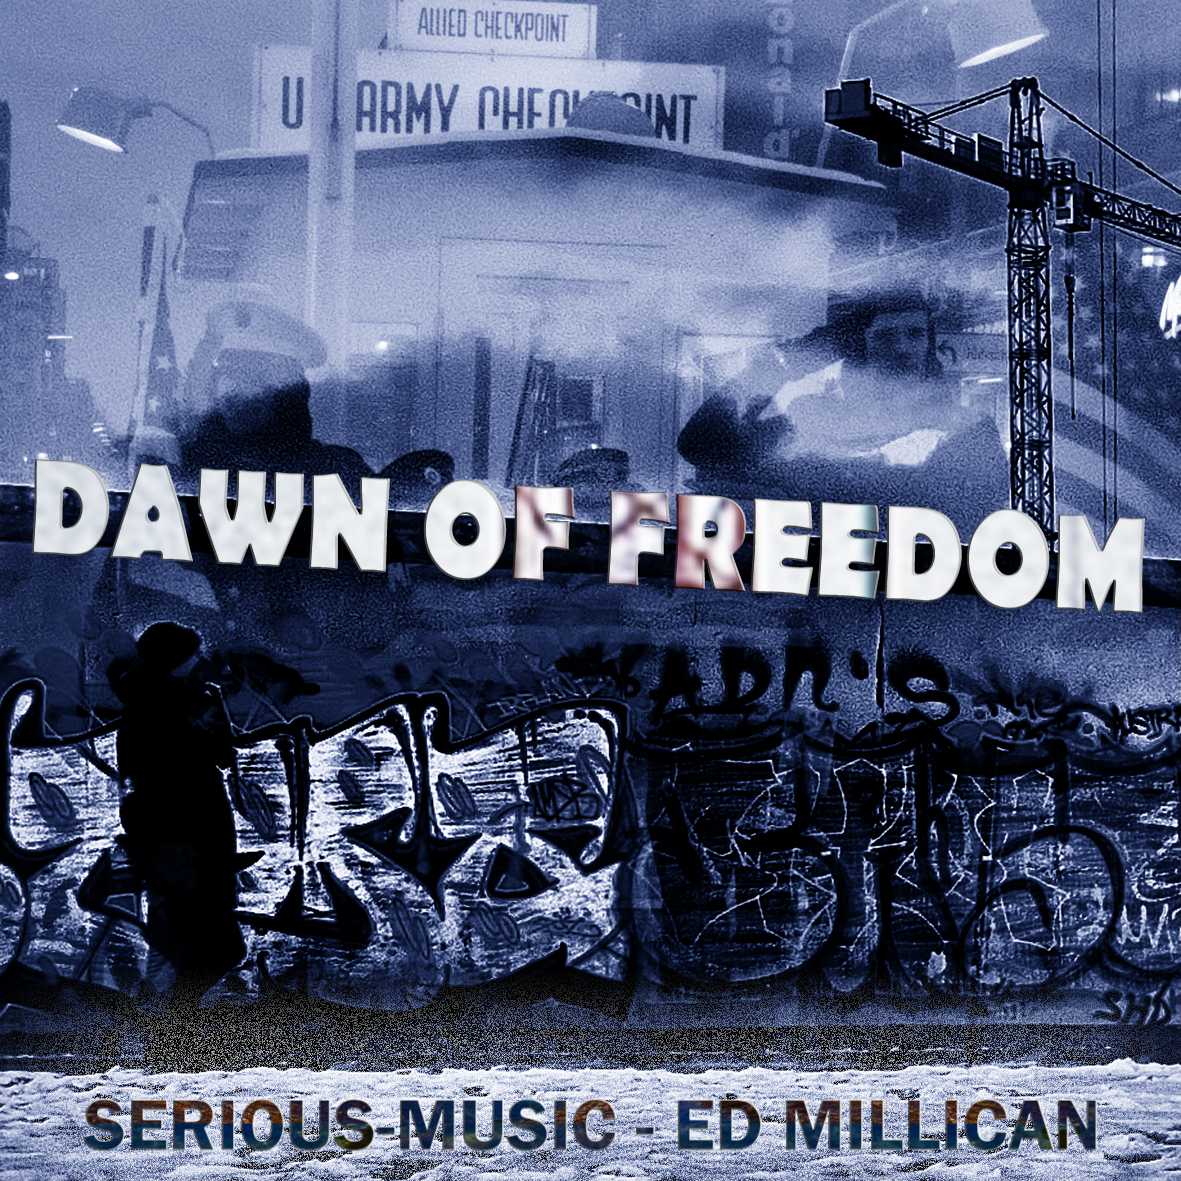 Dawn Of Freedom feat. Ed Millican - Album FALLEN